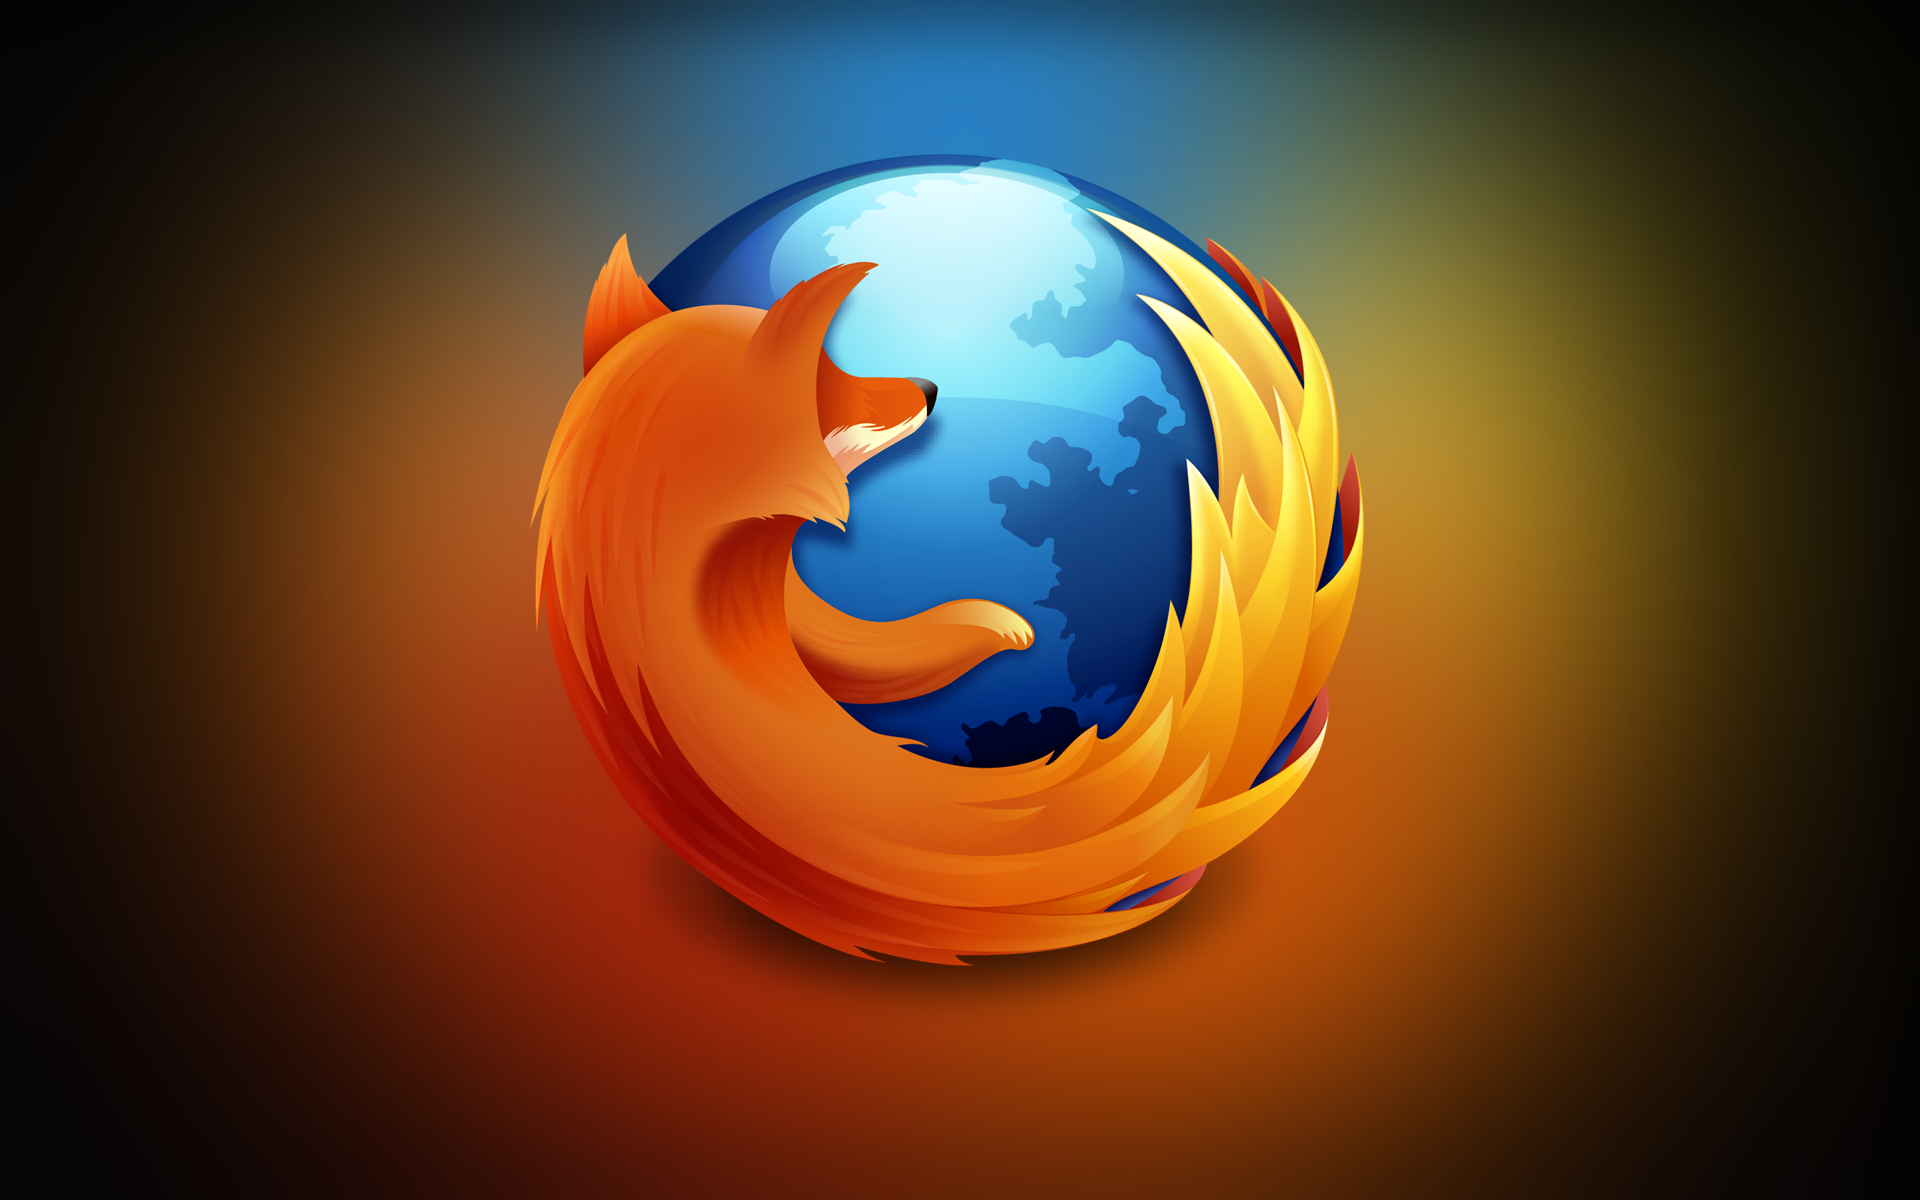 E’ la fine per Firefox? Fallimento per l’OS e Browser sempre meno popolare